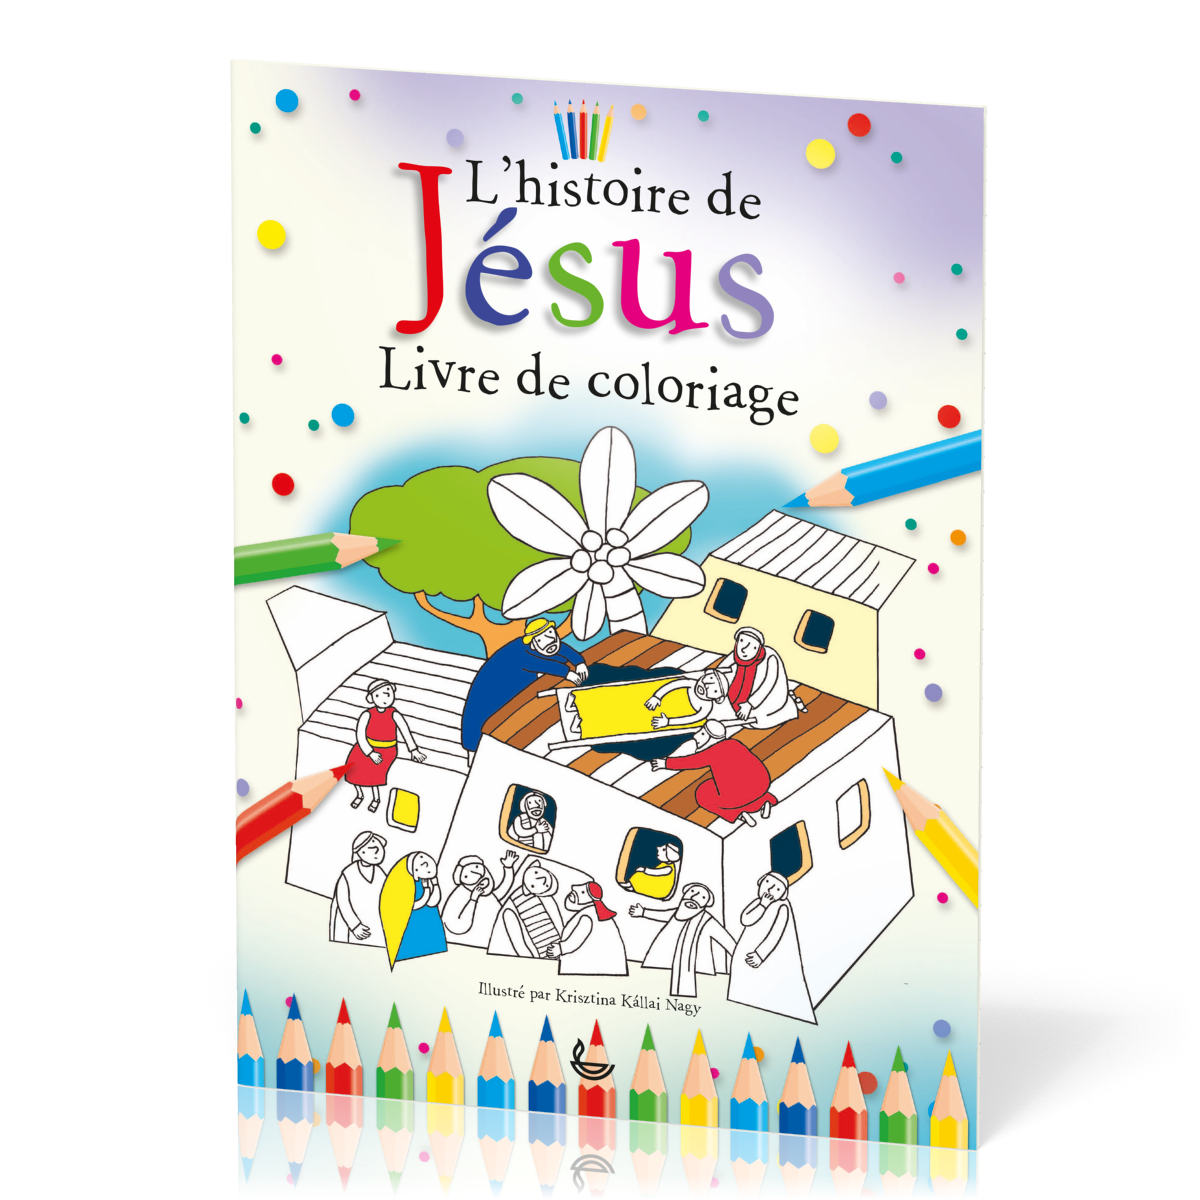 Histoire de Jésus (L') - Livre de coloriage